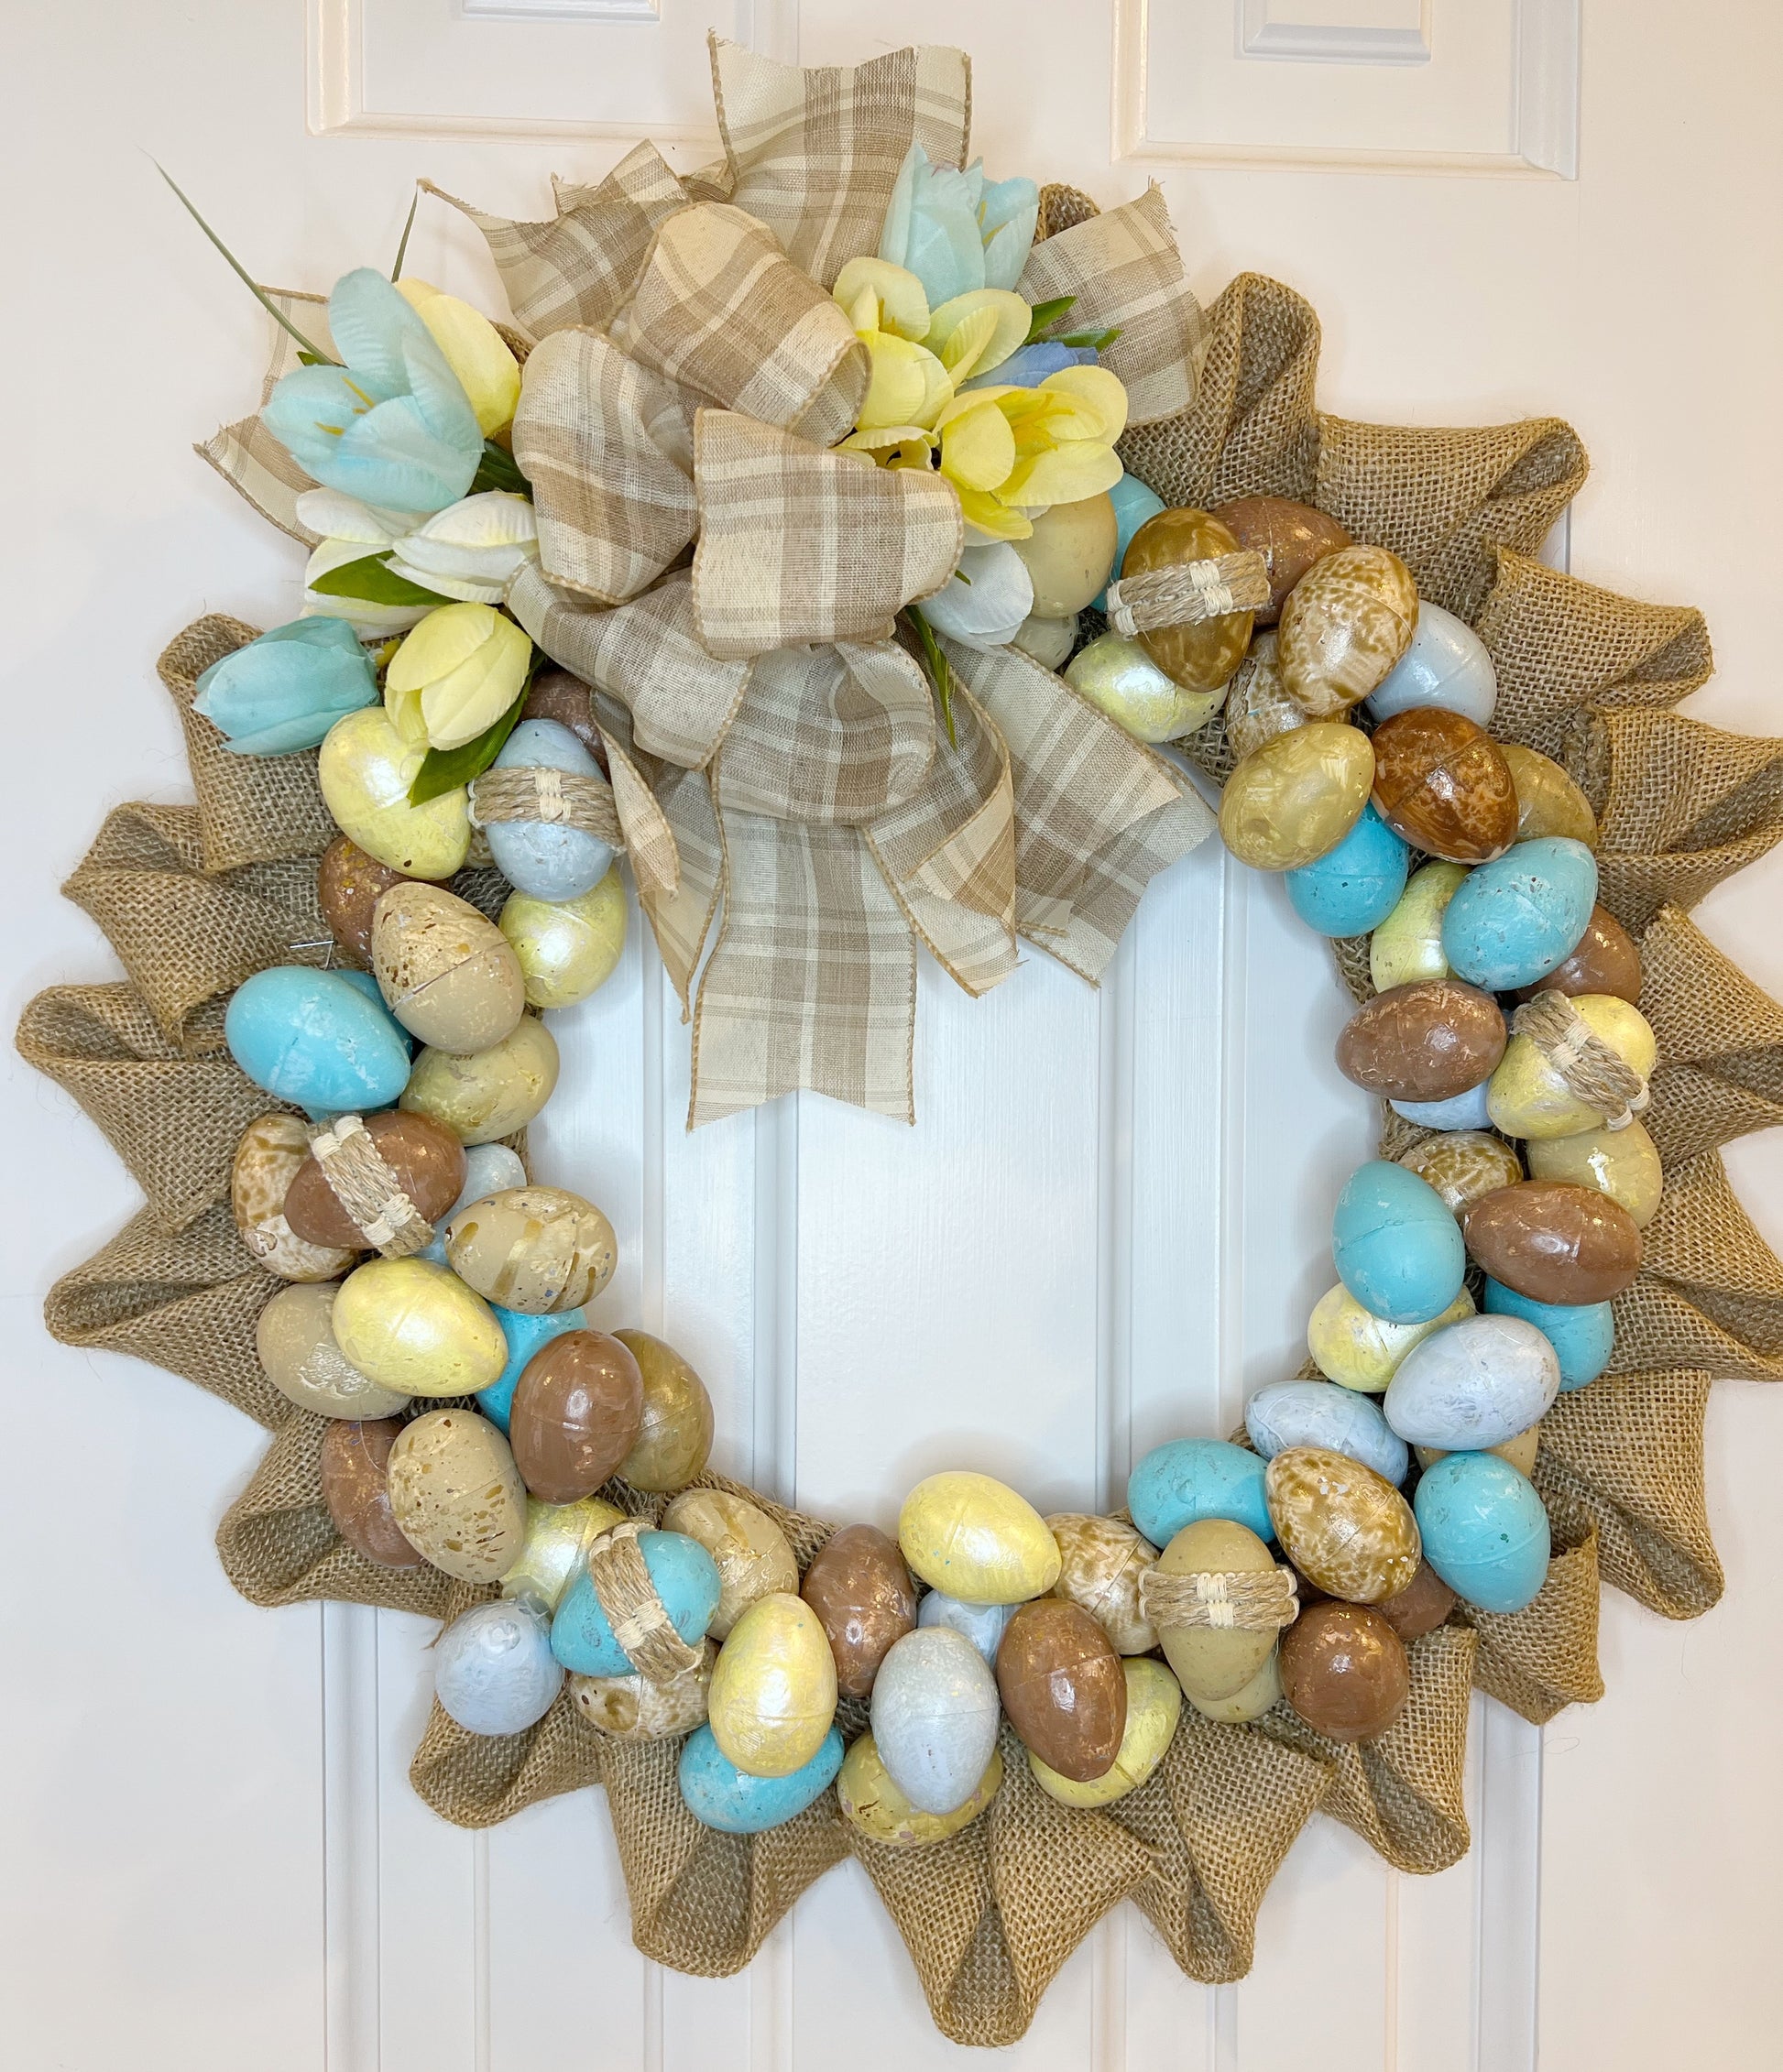 Rustic Eggs & Burlap Wreath